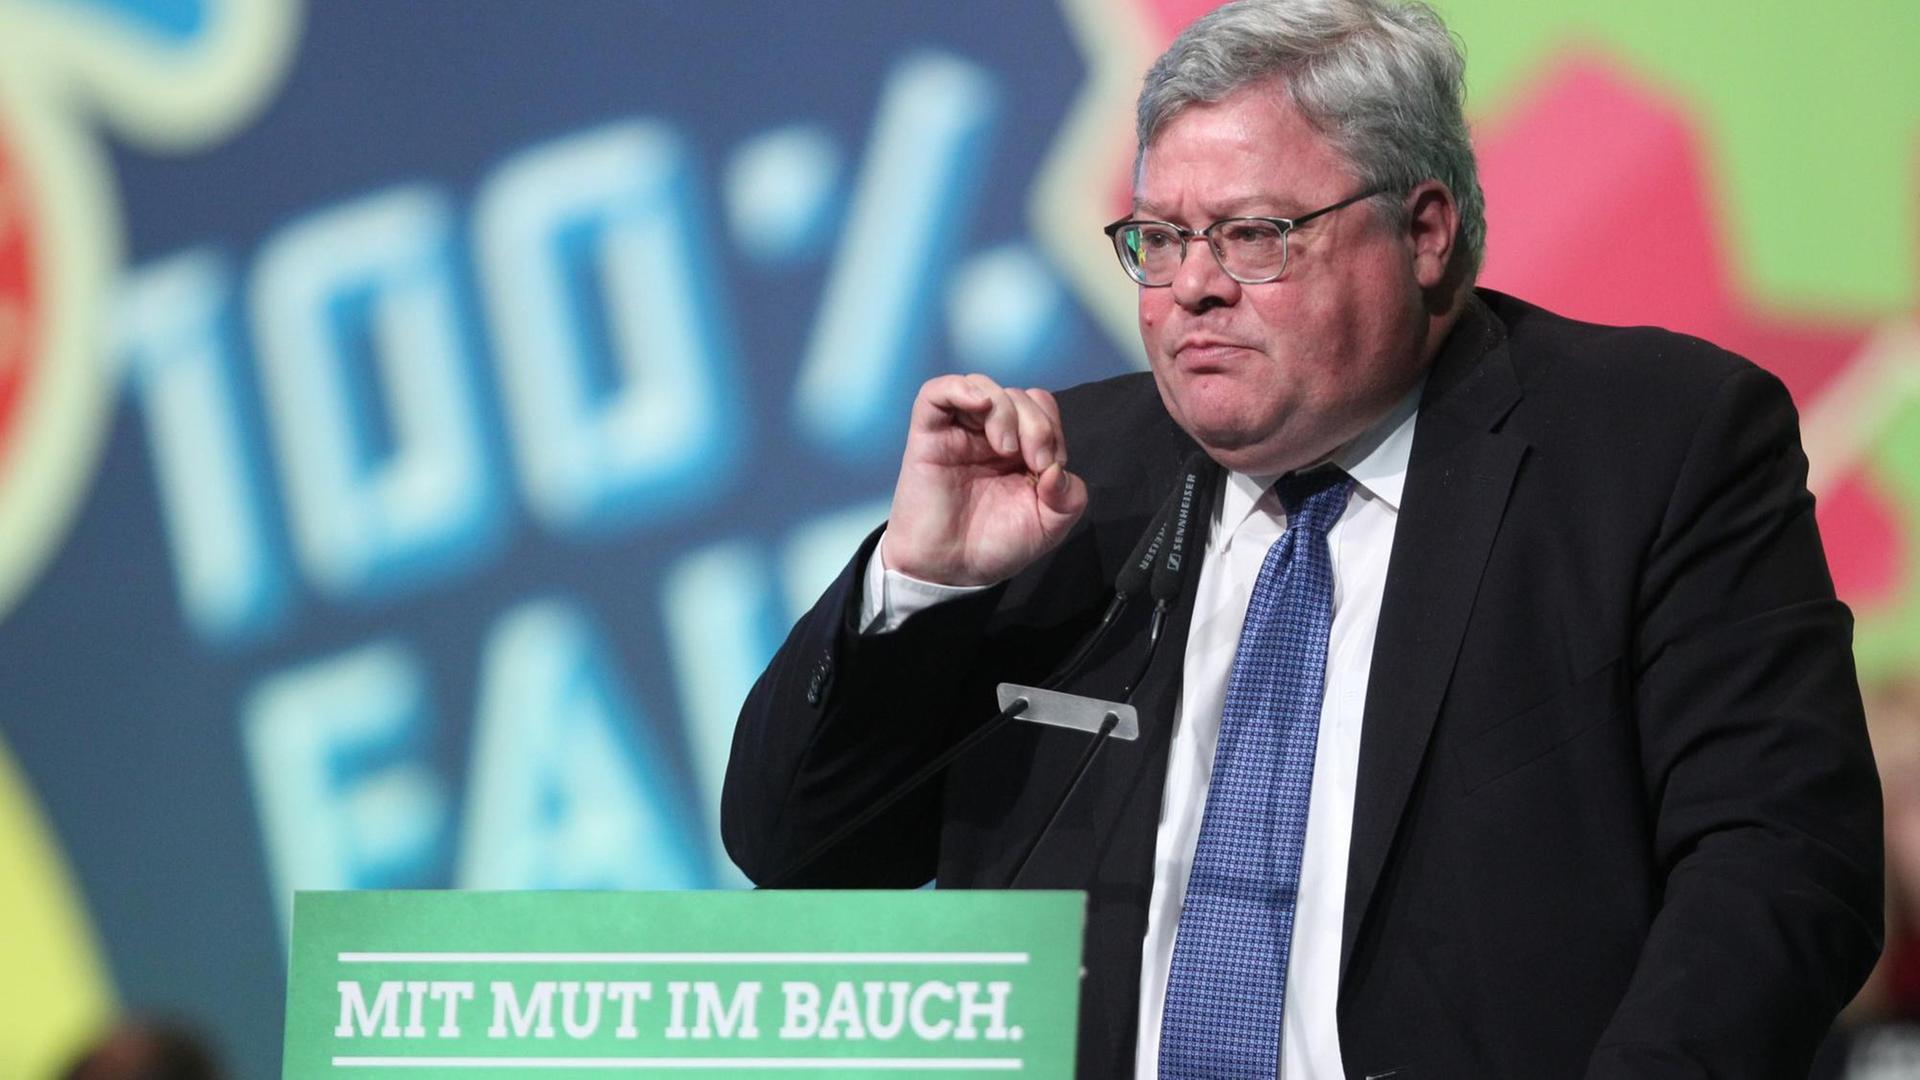 Reinhard Bütikofer, Vorsitzender der Europäischen Grünen, spricht am 22.11.2015 in Halle/Saale (Sachsen-Anhalt) auf dem Bundesparteitag von Bündnis 90/Die Grünen.